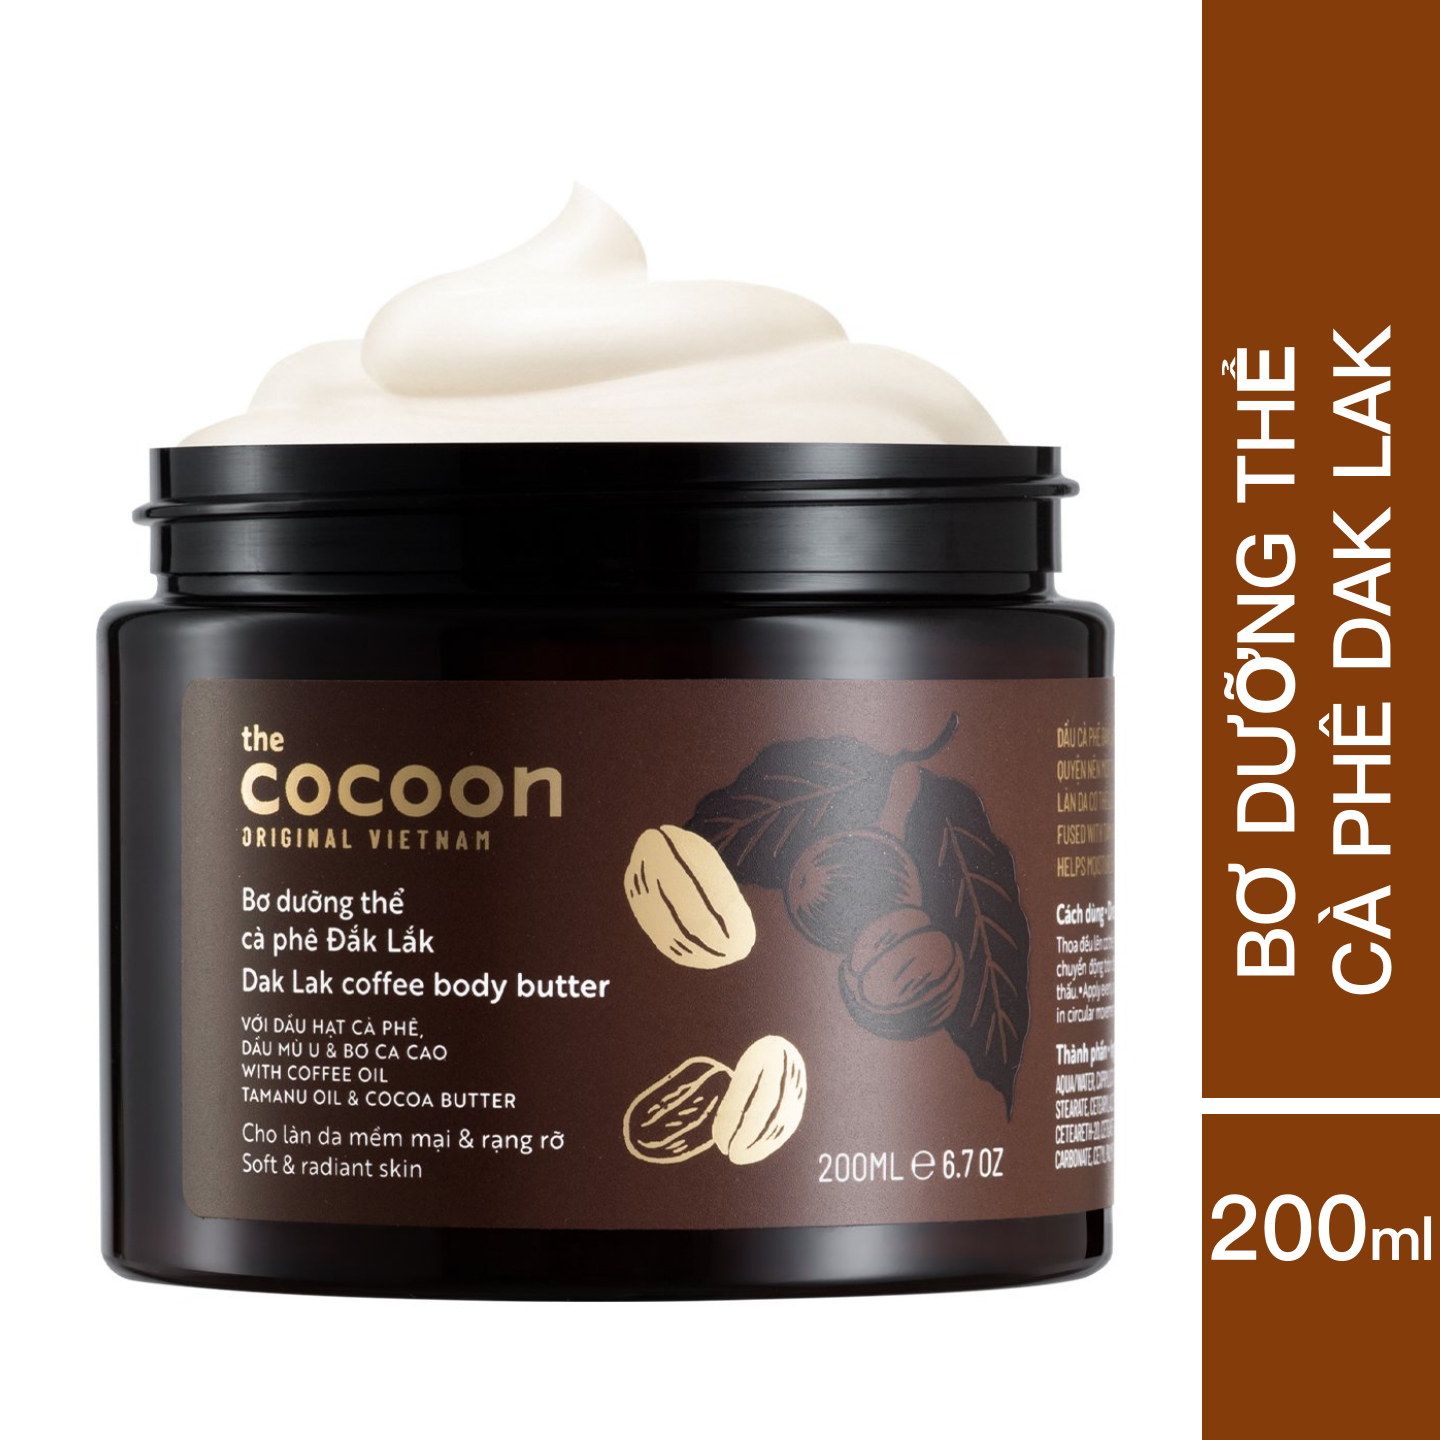 Bơ Dưỡng Thể Cocoon Cà Phê Đắk Lắk 200ml - Dưỡng ẩm toàn thân - Cocoon Dak Lak Coffee Body Butter